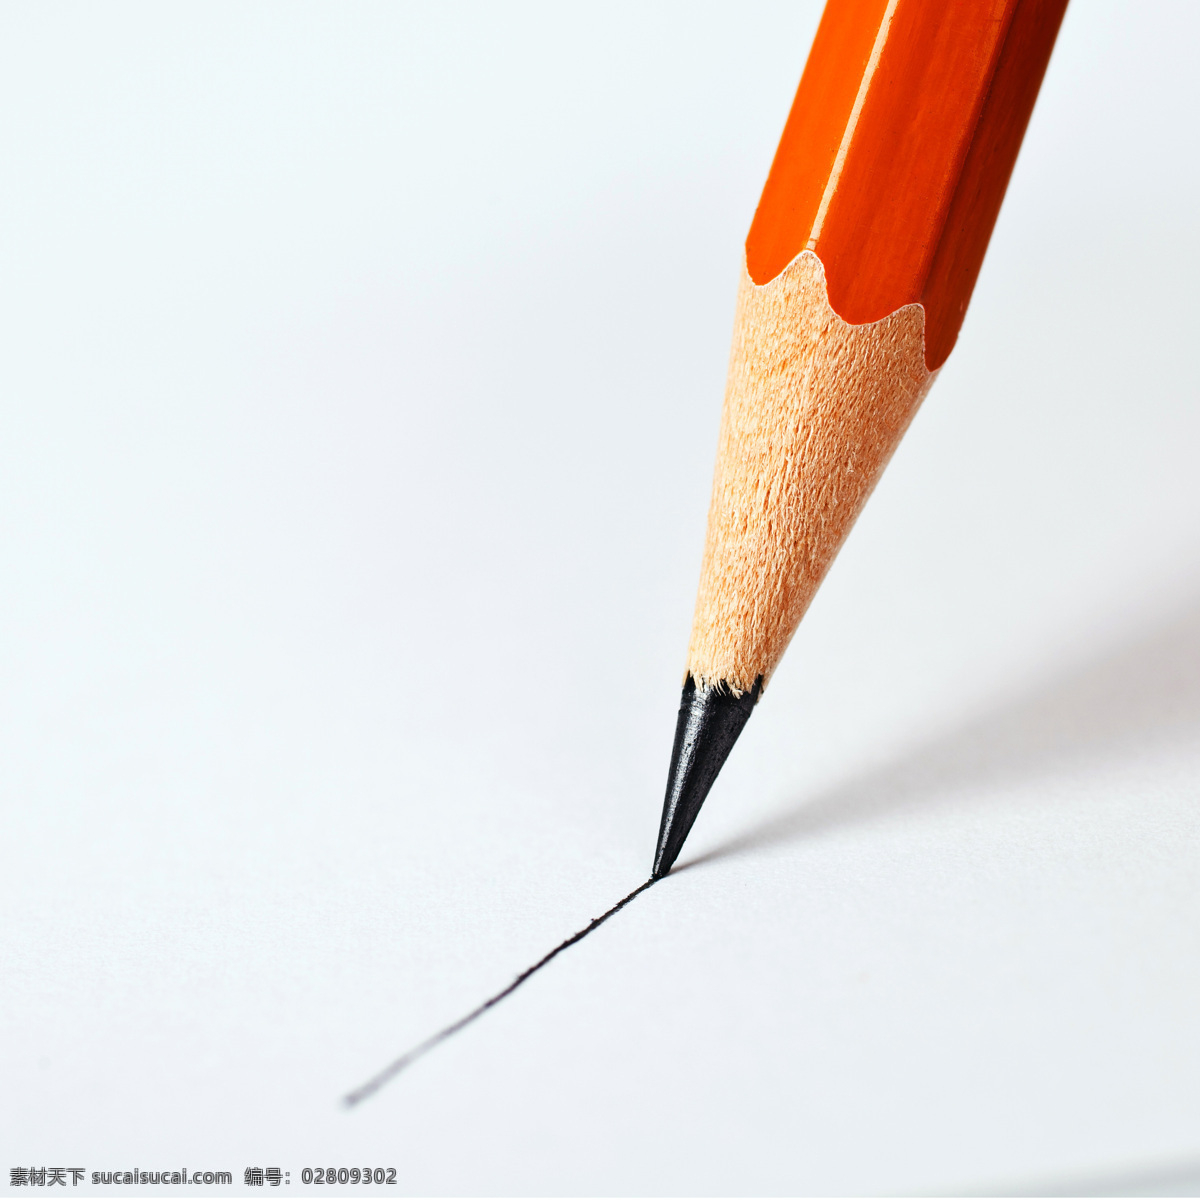 红色 铅笔 笔 绘画笔 彩色铅笔 文具 学习用品 办公学习 生活百科